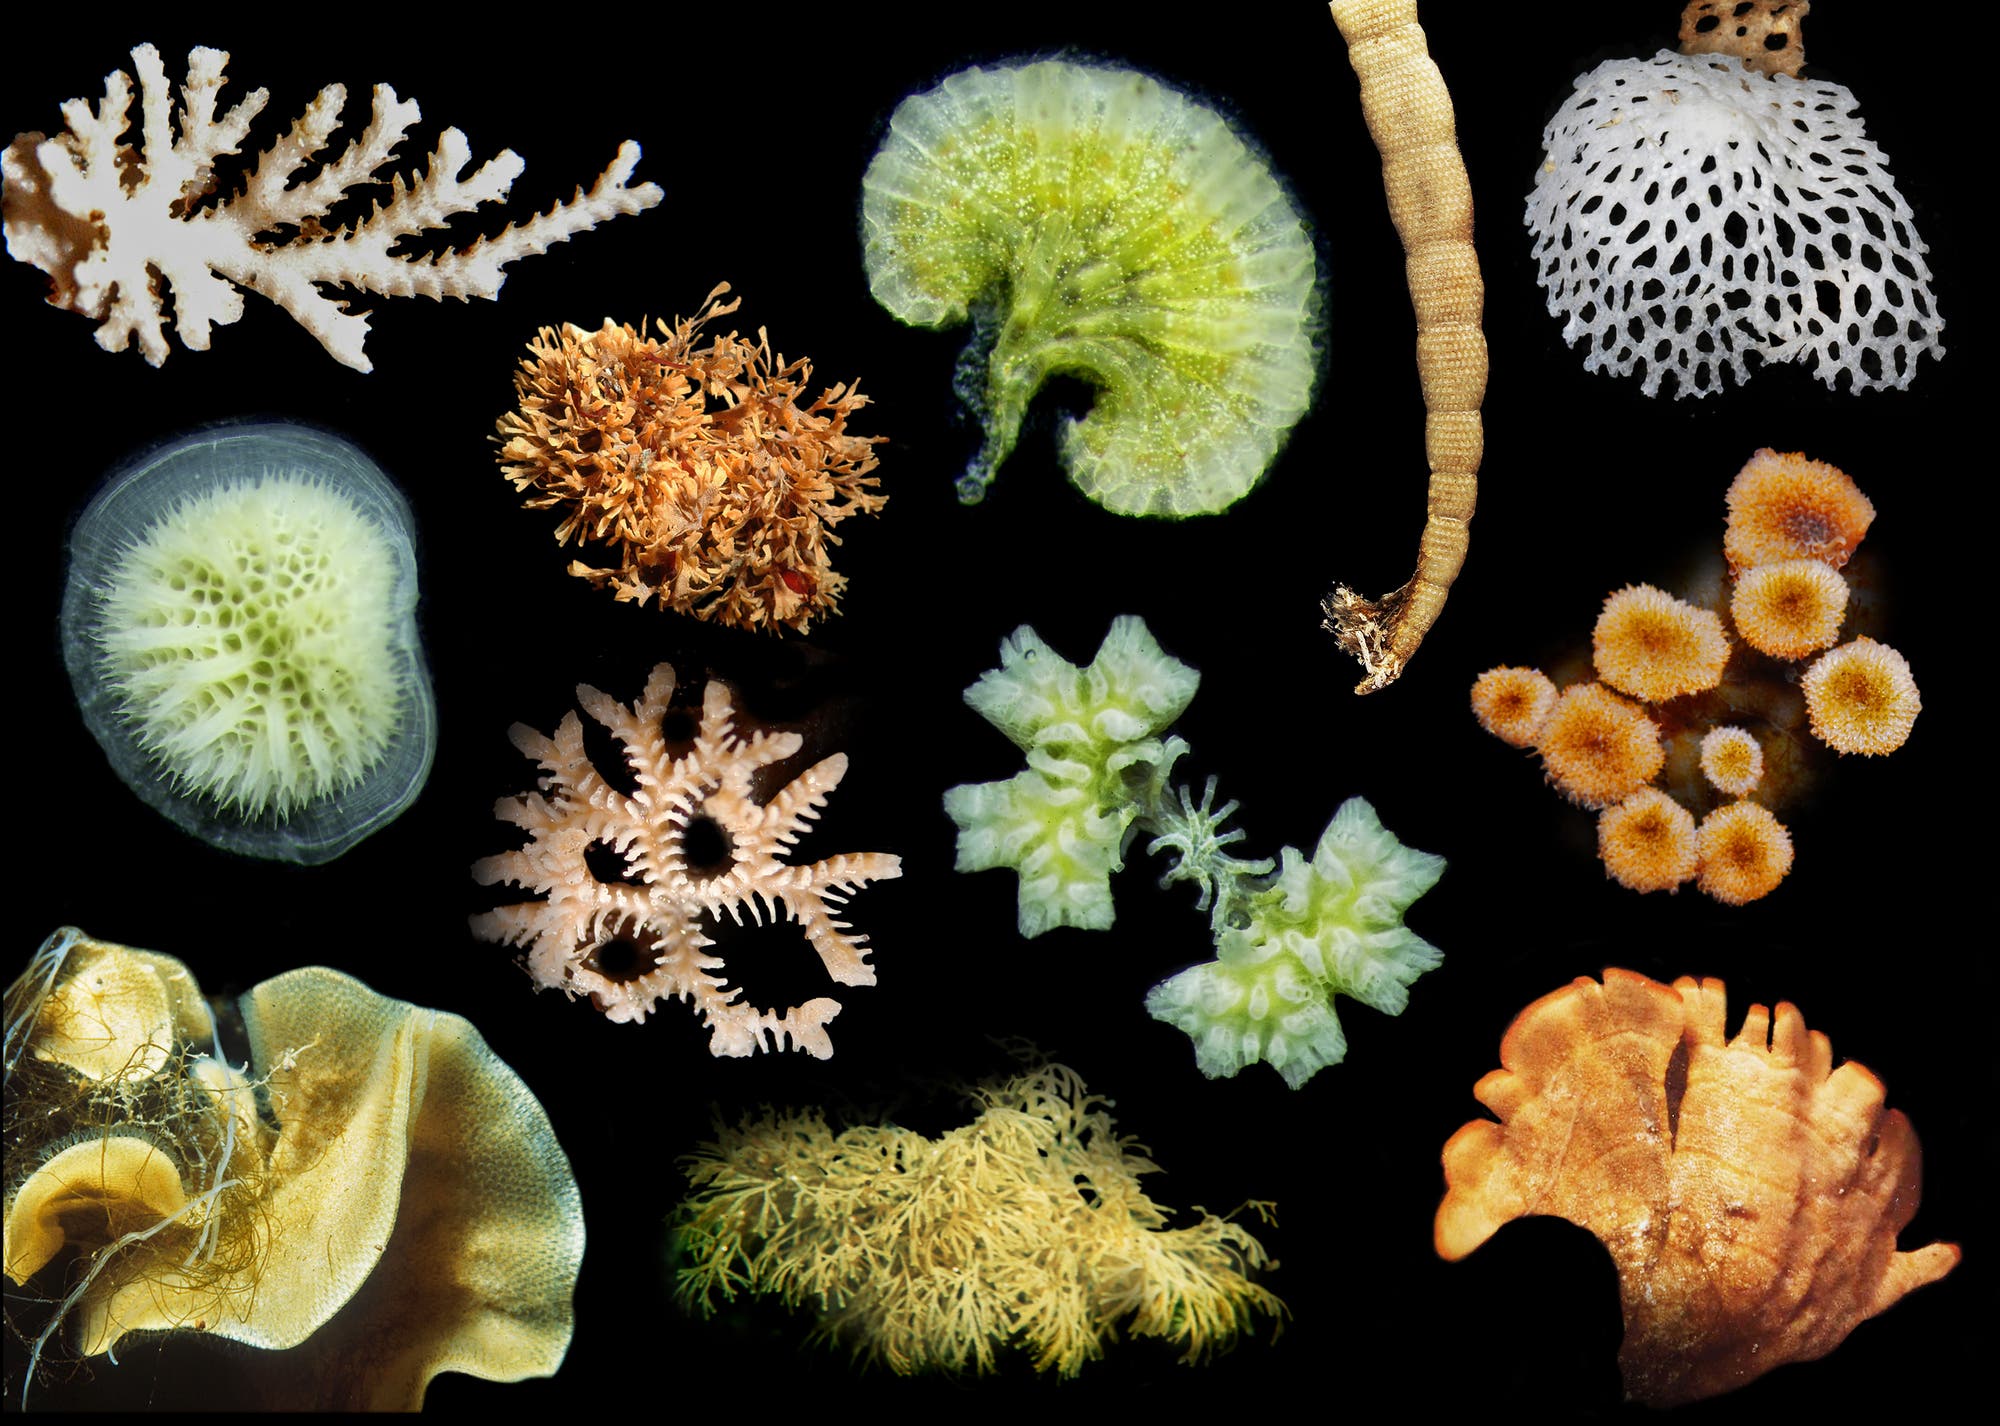 Die mikroskopisch kleinen Bryozoen bilden Kolonien von erstaunlicher Formen- und Farbvielfalt.